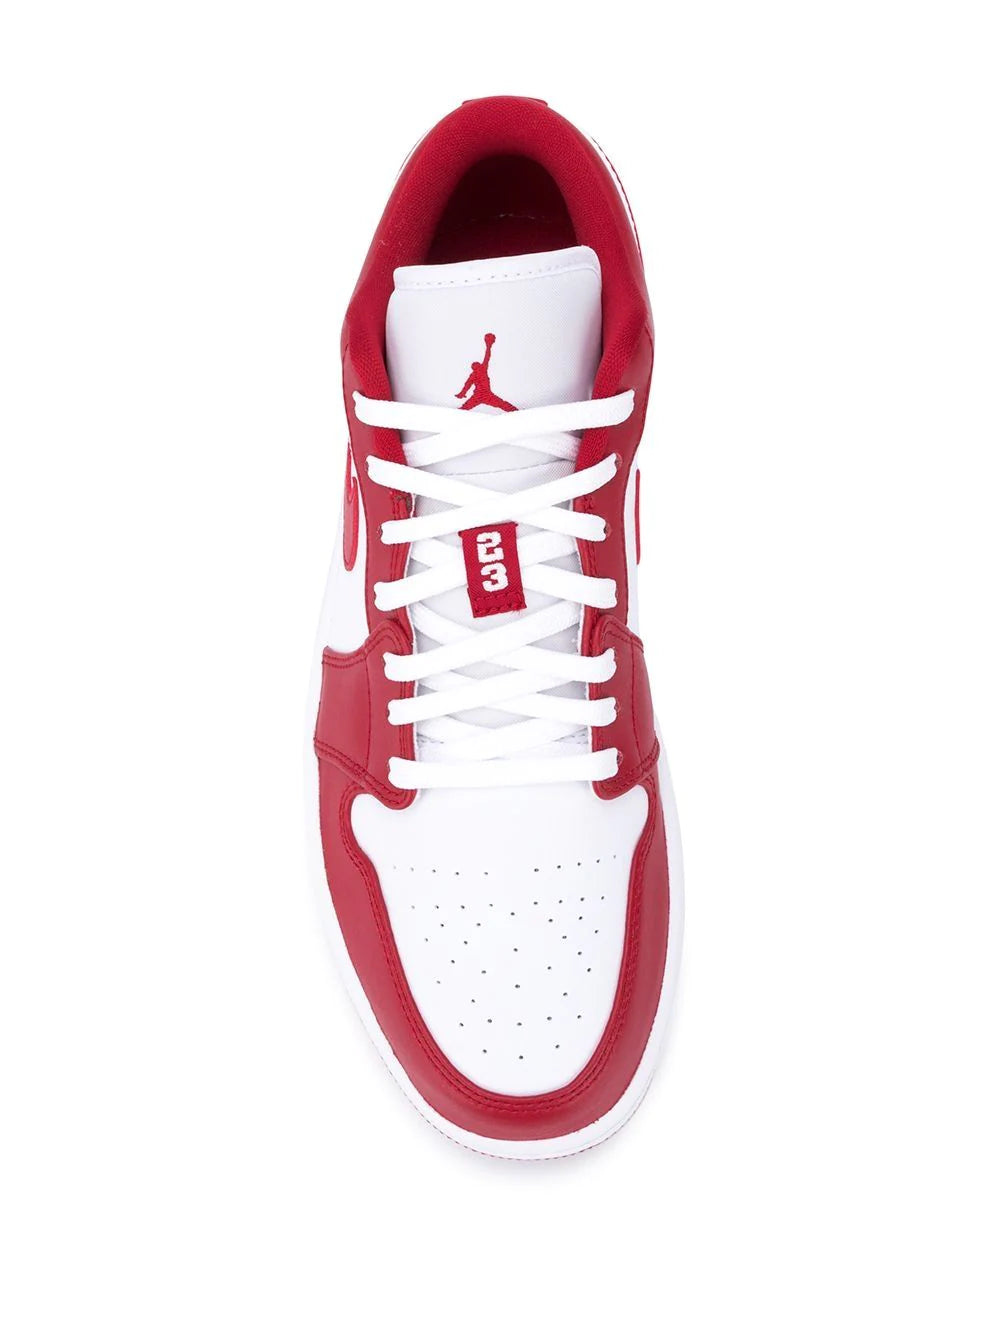 Air Jordan 1 Low "Gym Red" sneakers